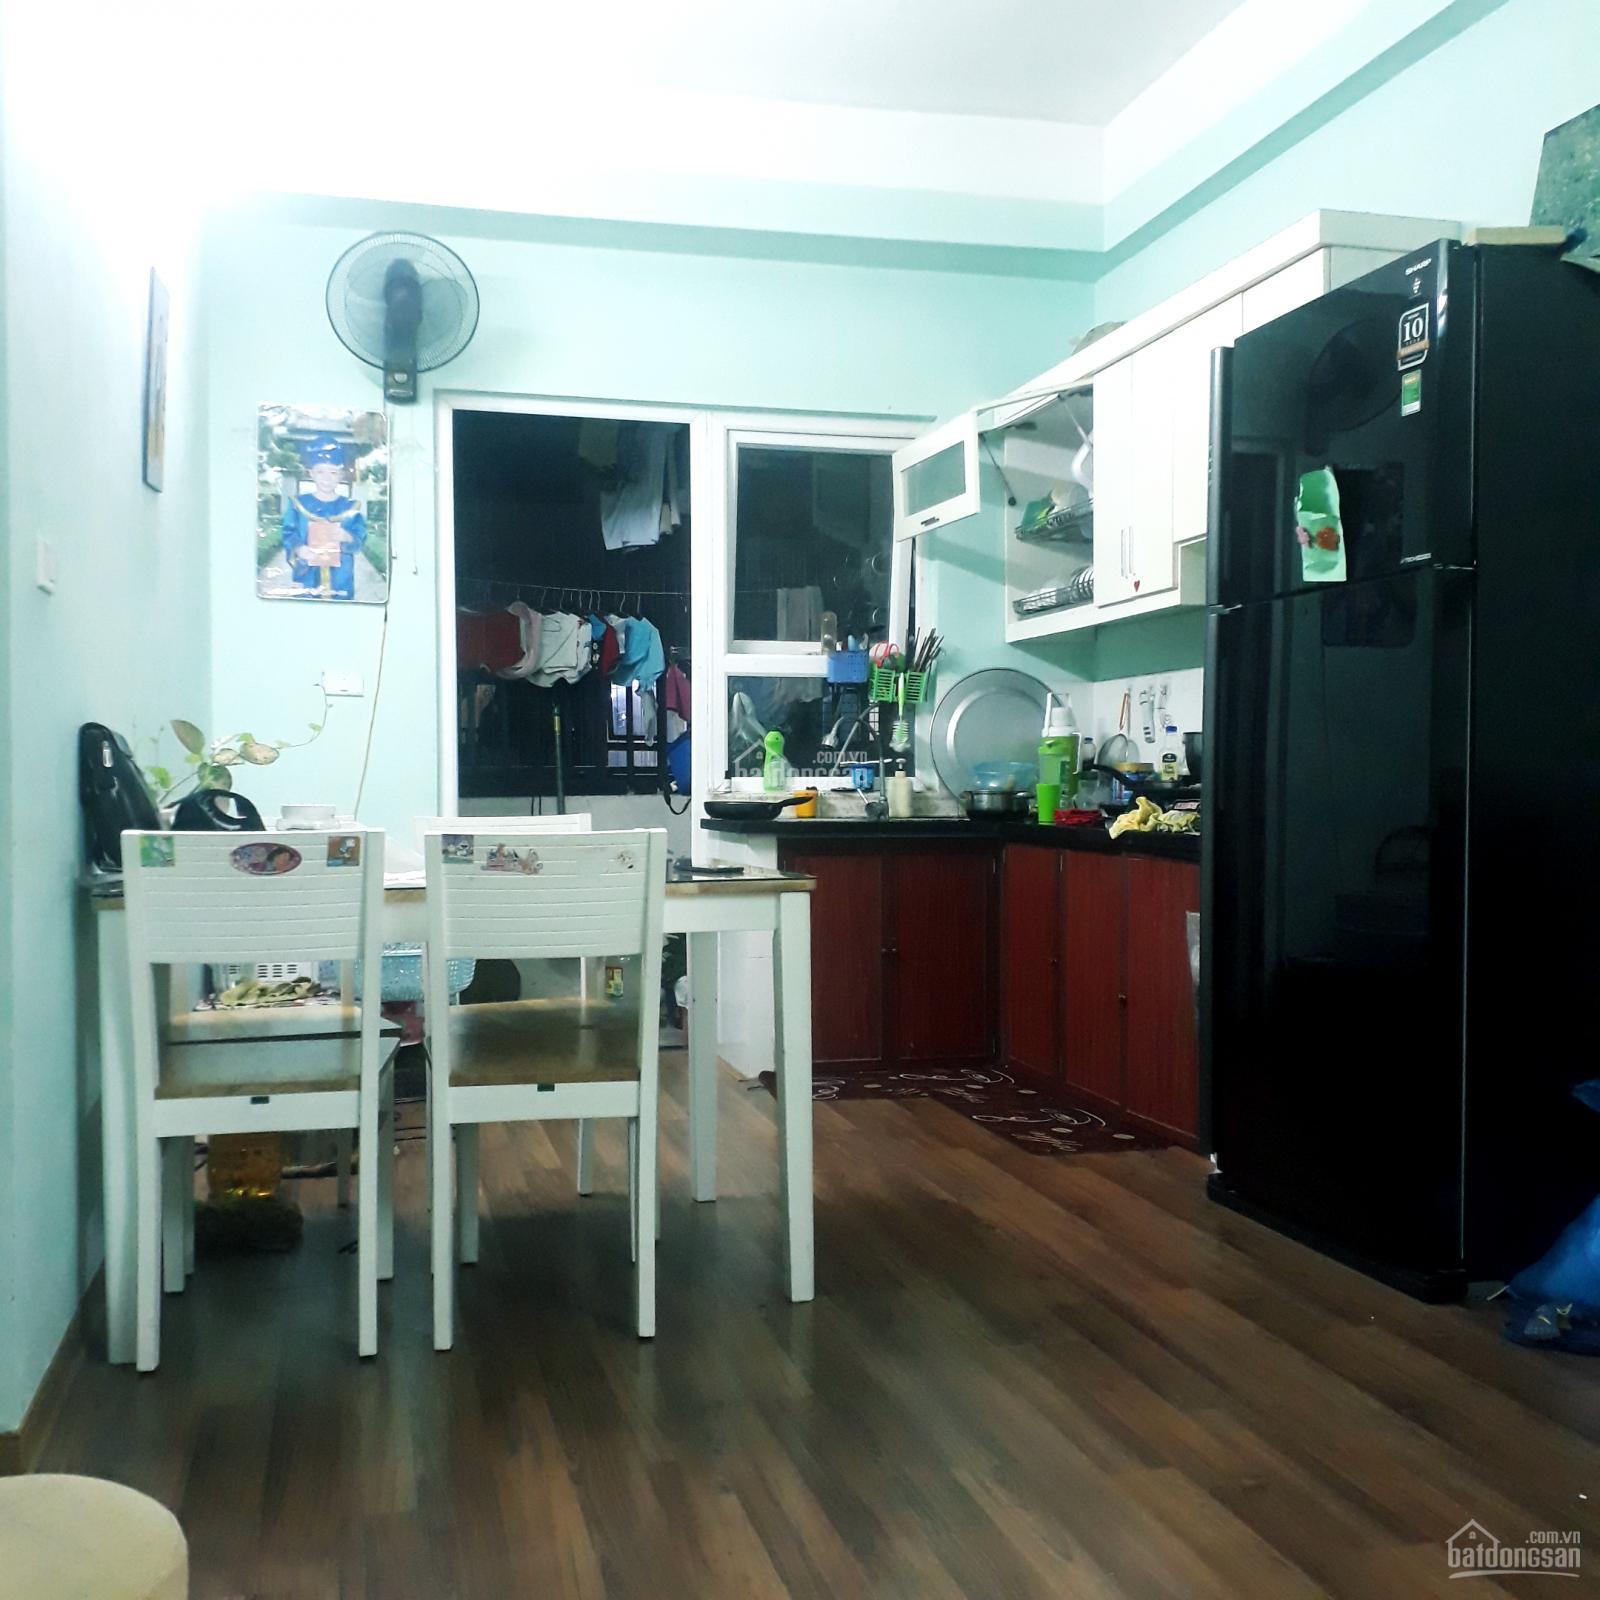 Chính chủ bán căn hộ chung cư HH1C Linh Đàm, DT 56m2, 2 ngủ, full nội thất, giá hấp dẫn